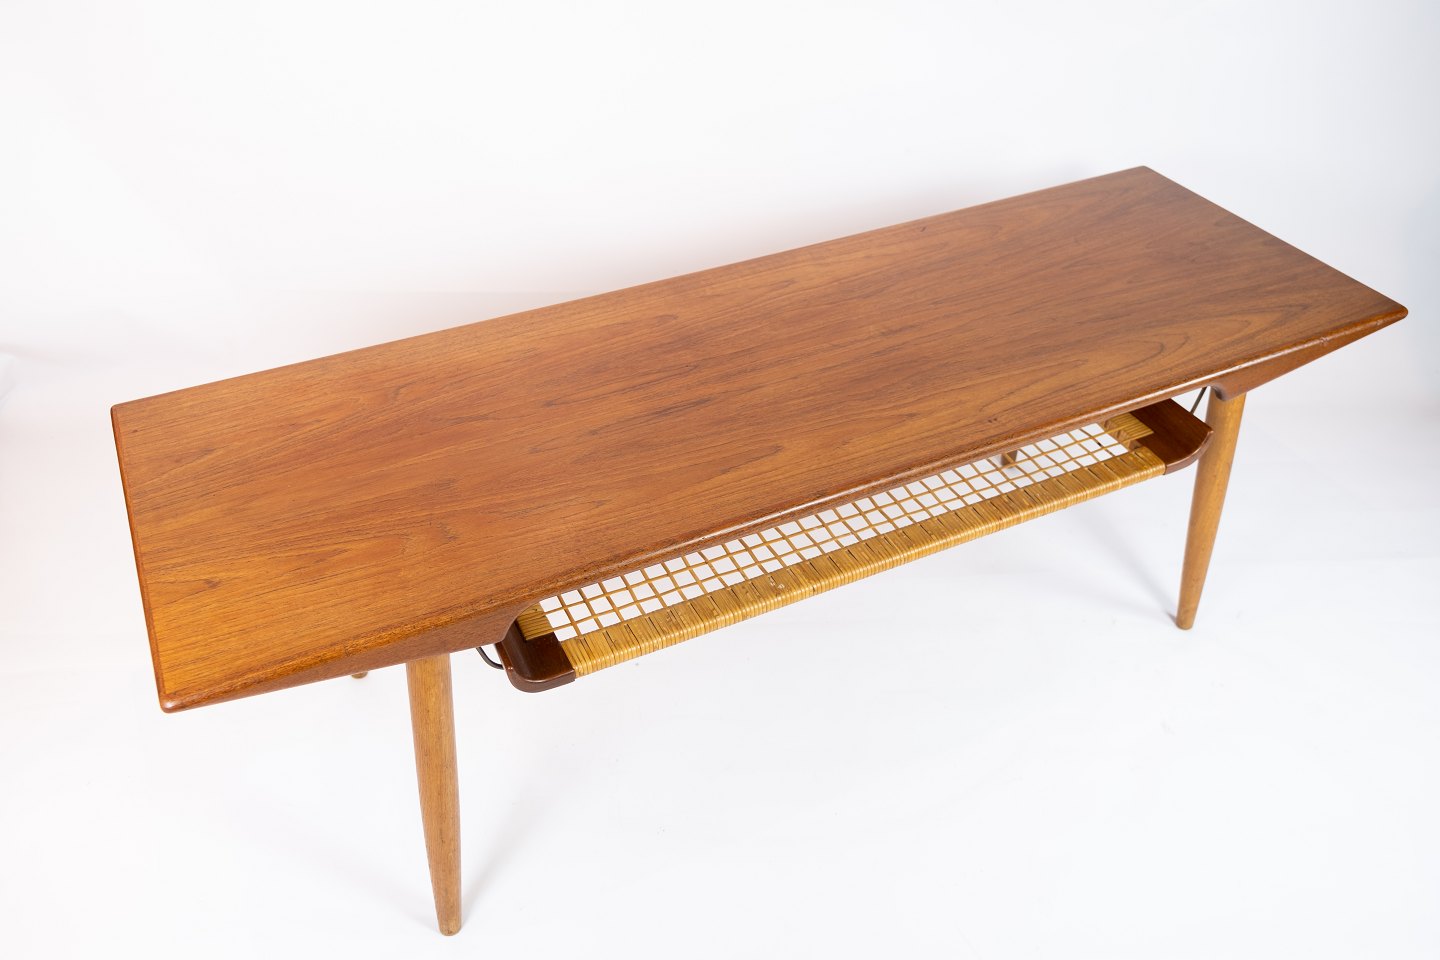 KAD ringen - Sofabord i teak med af dansk design fra 1960erne. * 5000m2 udstilling. - Sofabord i teak med flethylde af design fra 1960erne. 5000m2 udstilling.